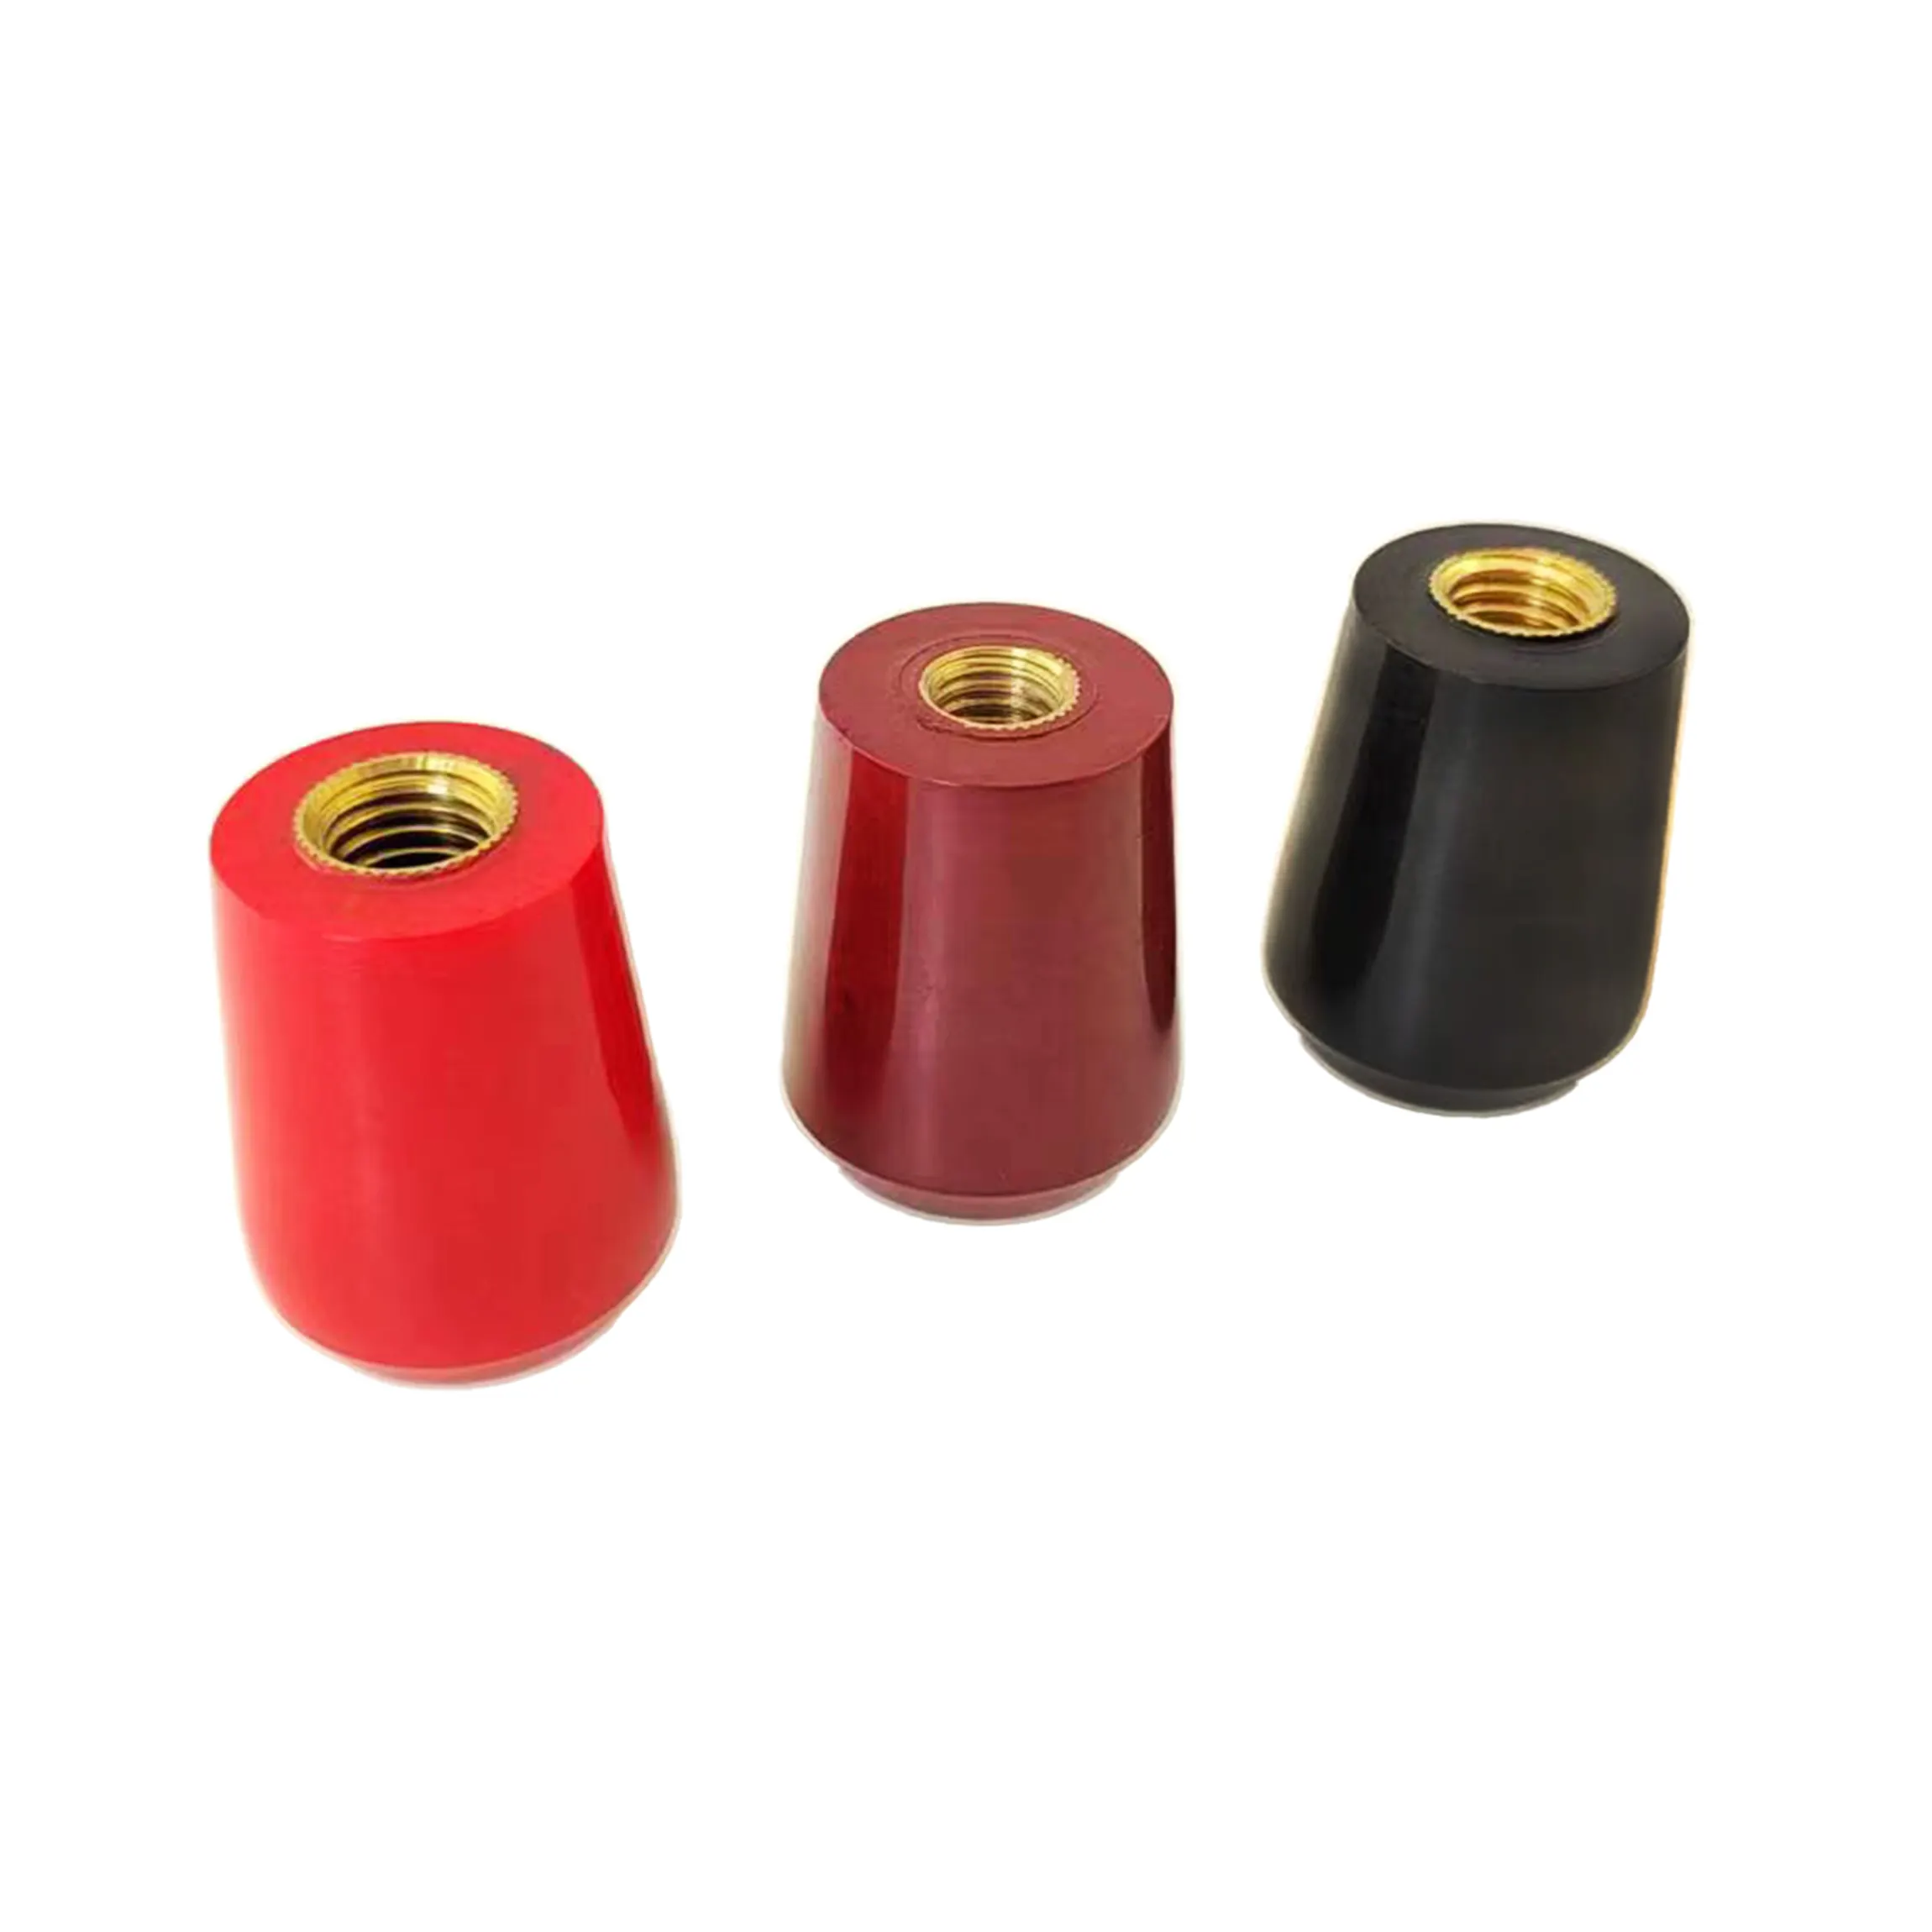 Bakeliet Zwart Rood Handvat Met Platte Bovenkant En Vrouwelijke Britse Metrische Messing Draad Verpakkingsmachine Handvat